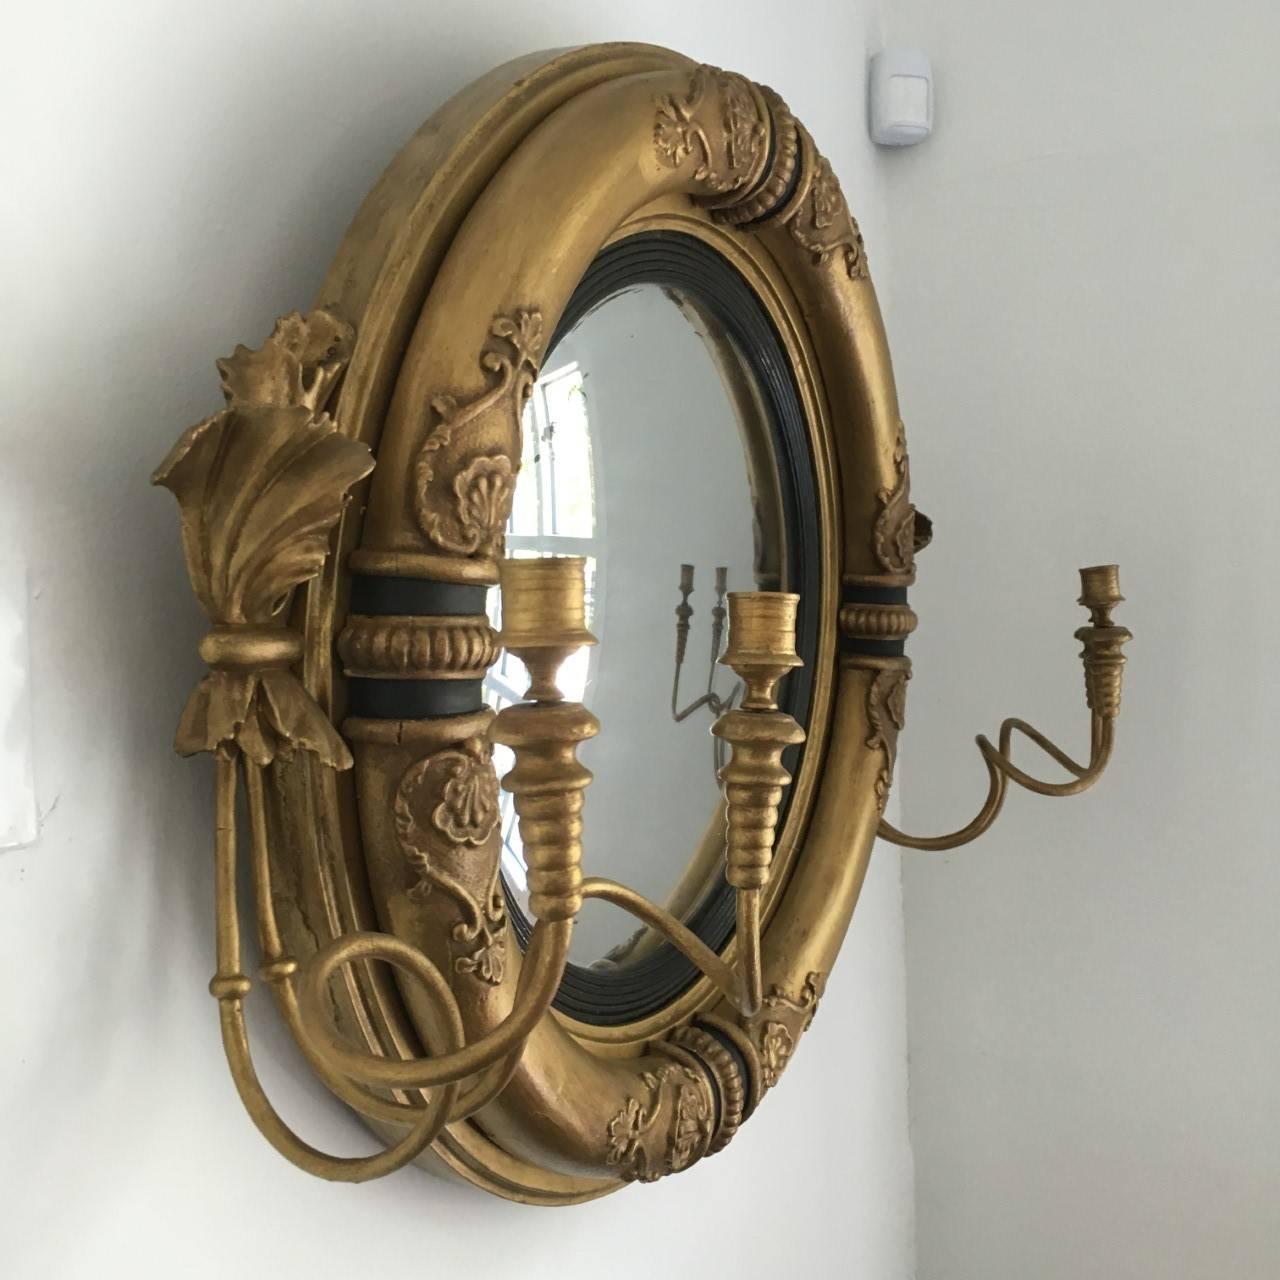 English Regency Period Convex Girandole Mirror For Sale